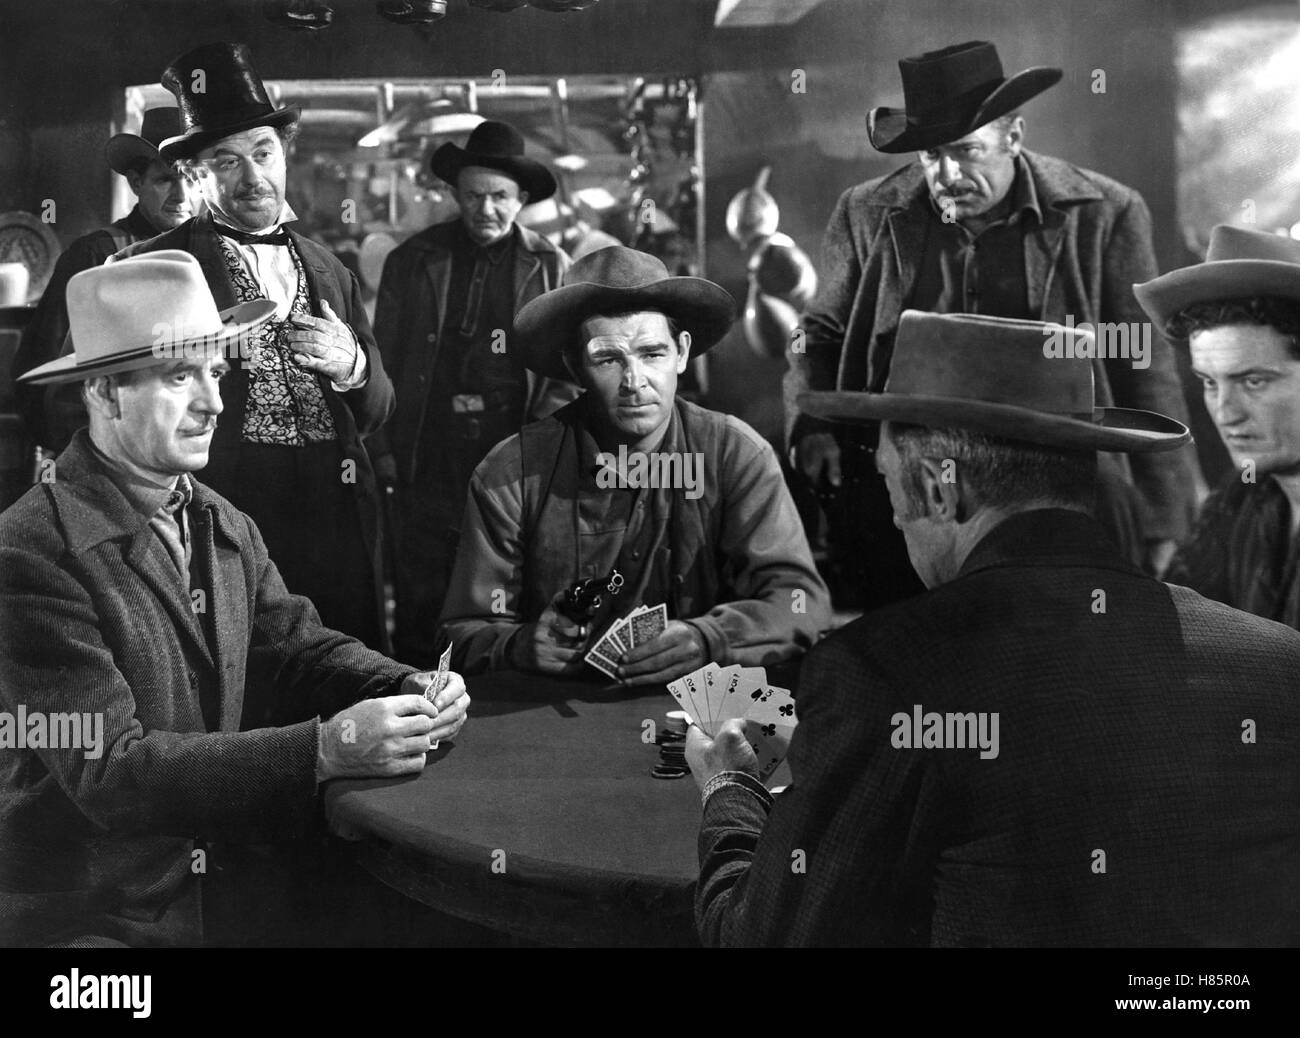 Der Rächer von Texas Panhandle (USA) 1948, Regie: Lesley Selander, asta CAMERON (Mitte), Stichwort: Kartenspiel, Poker Foto Stock